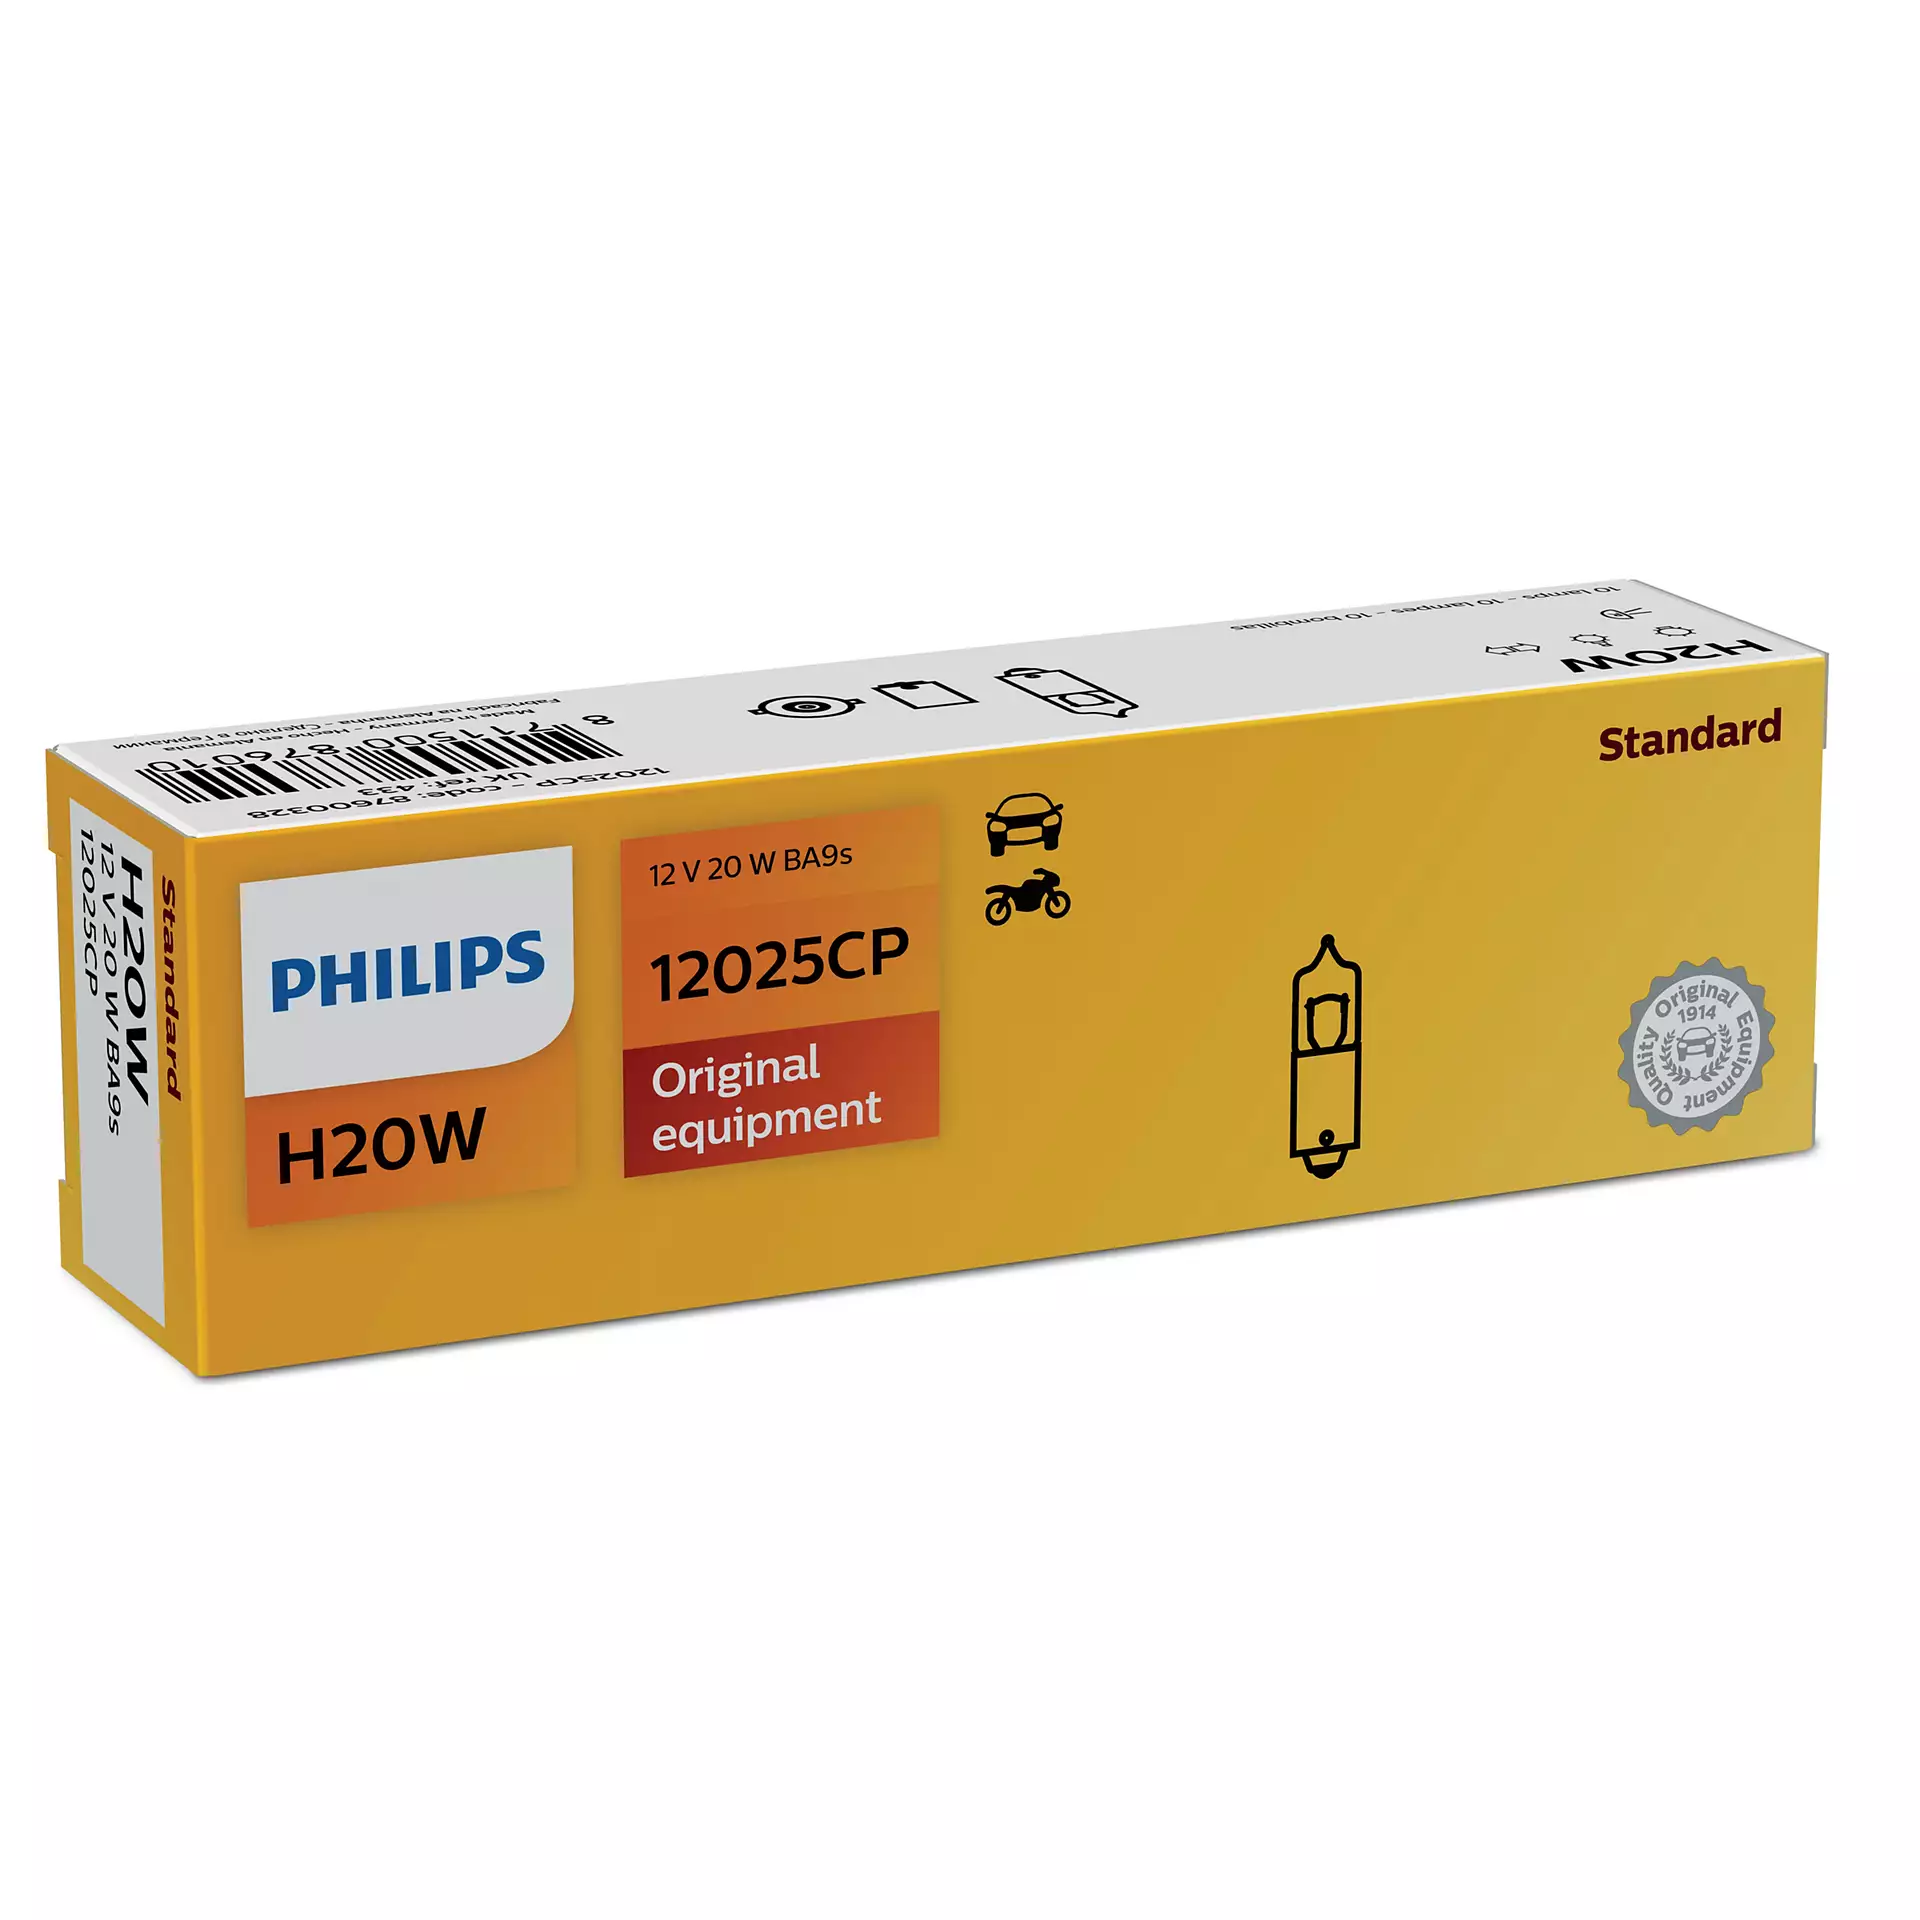 Лампа Philips Standard H20W 12V 20W 12025 CP